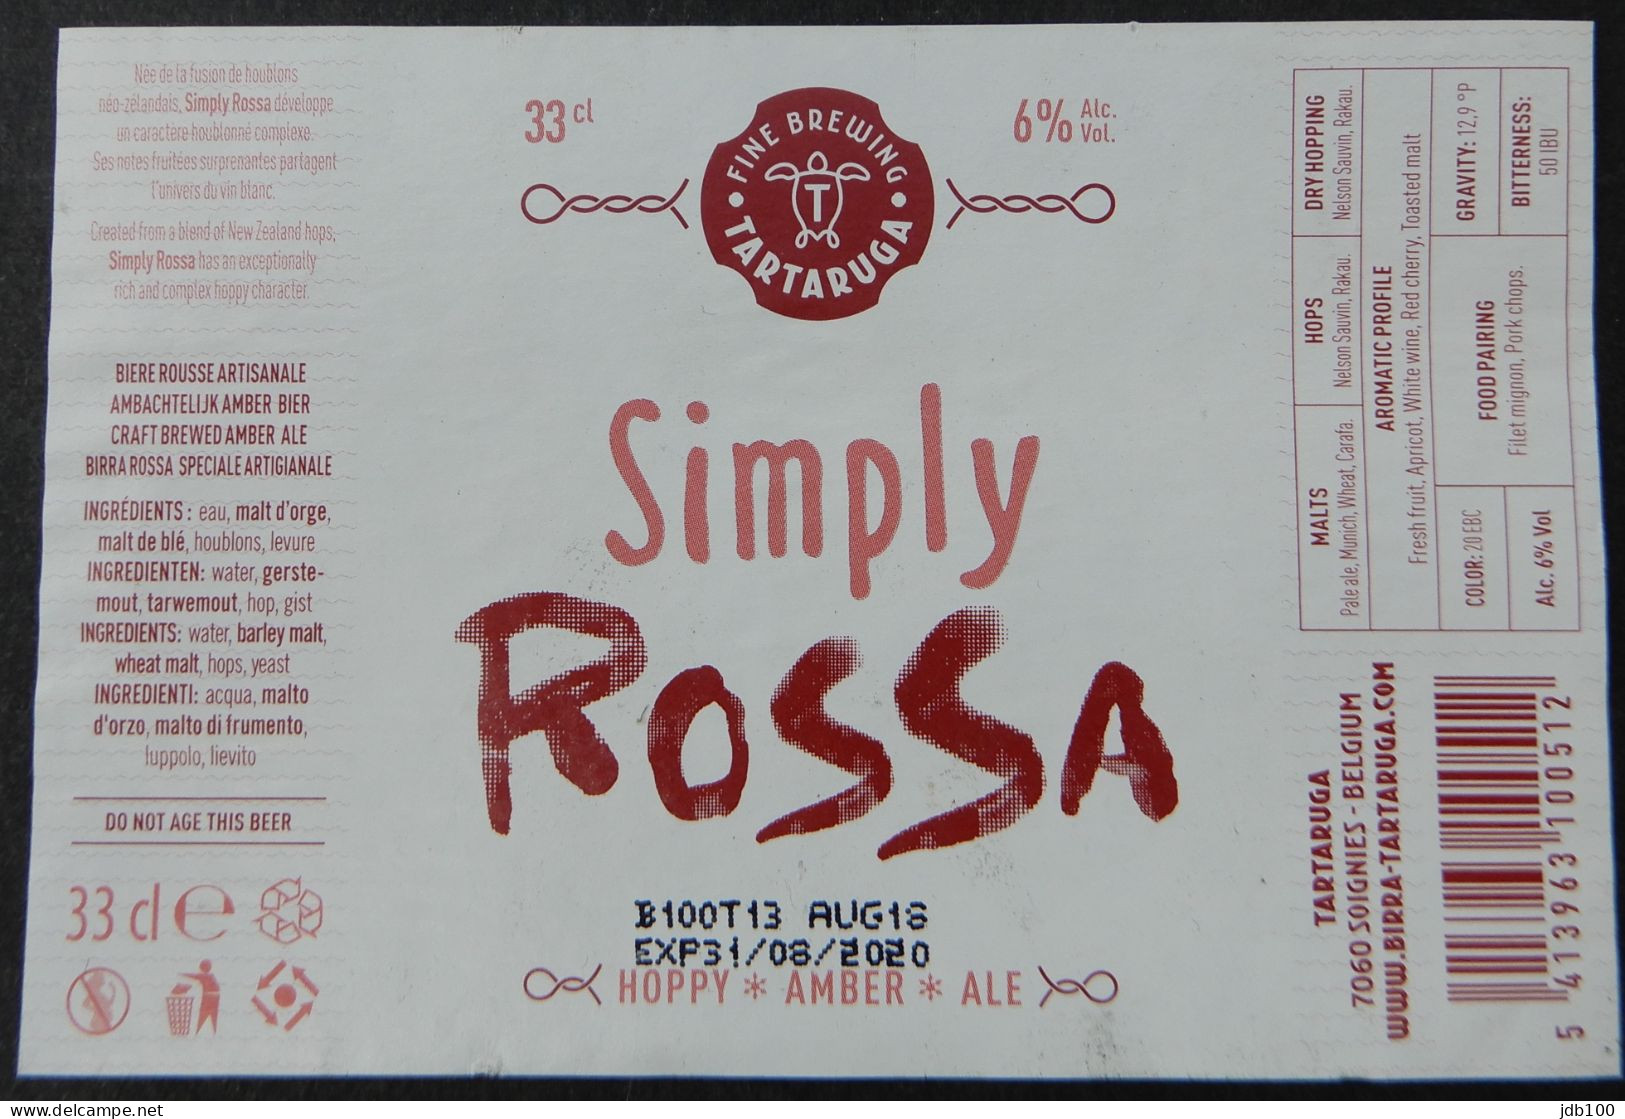 Bier Etiket (5h7), étiquette De Bière, Beer Label, Simply Rossa Brouwerij Tartaruga - Bière